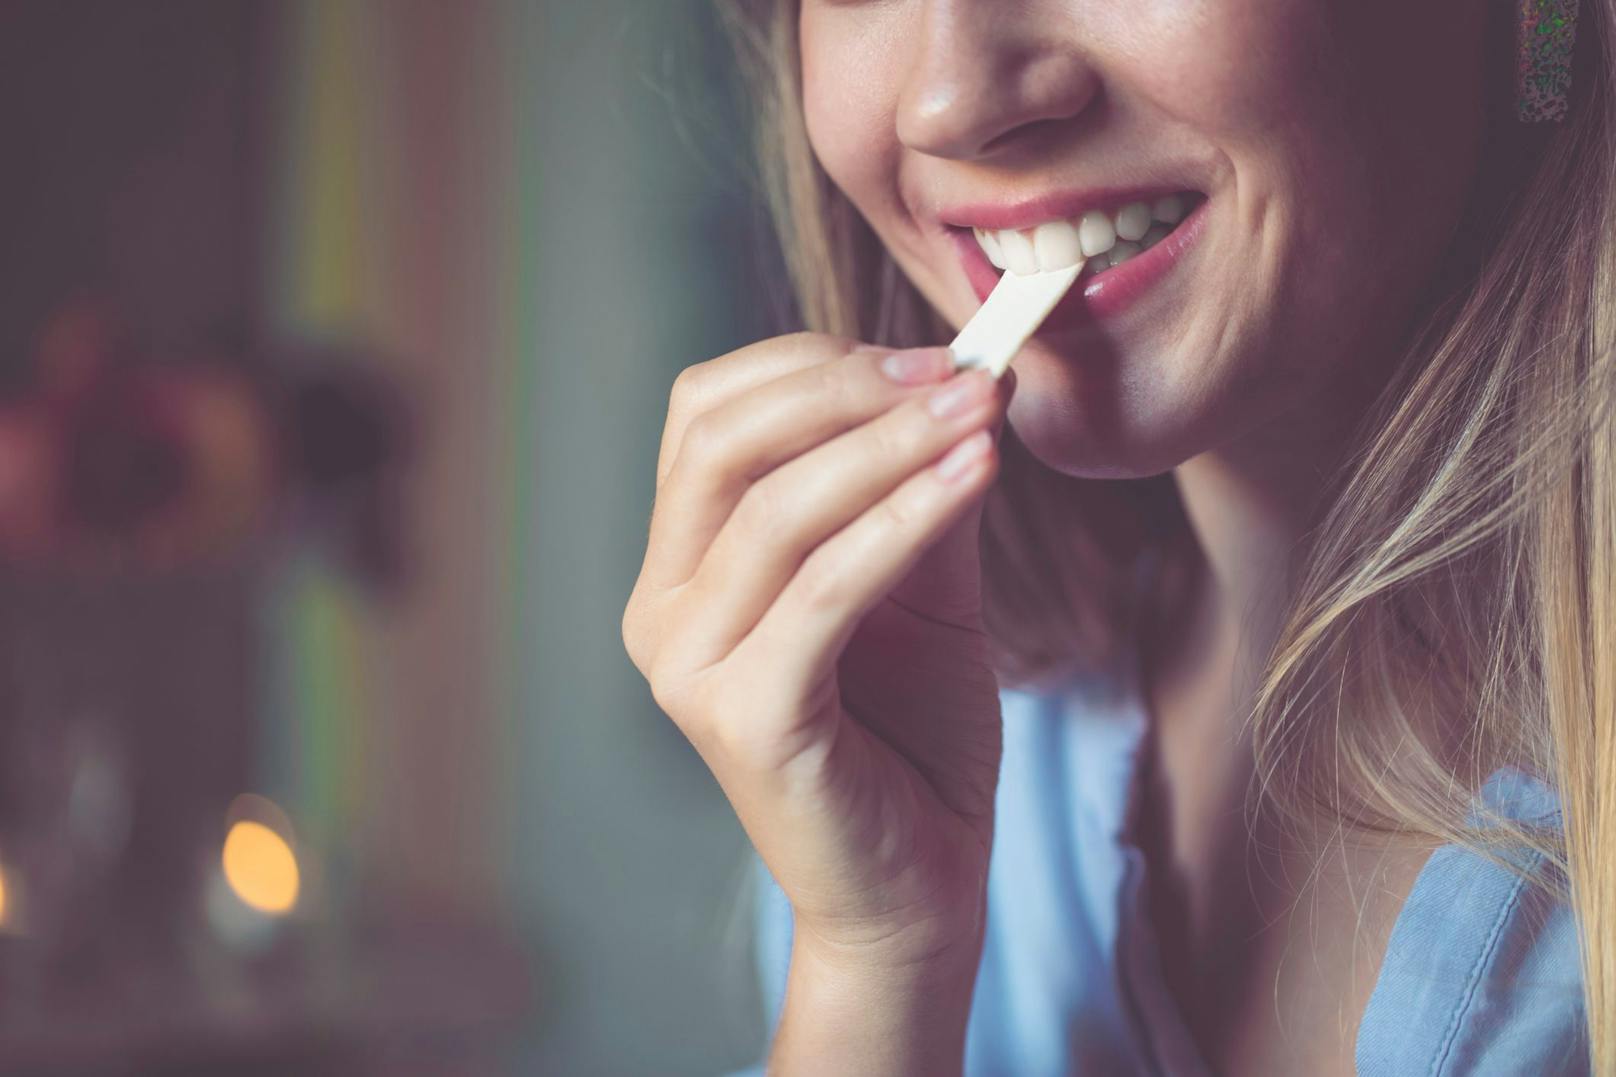 Kaugummis können eine pflegende Ergänzung für die Mund- und Zahnhygiene sein. Sie ersetzen jedoch nicht das tägliche Zähneputzen.